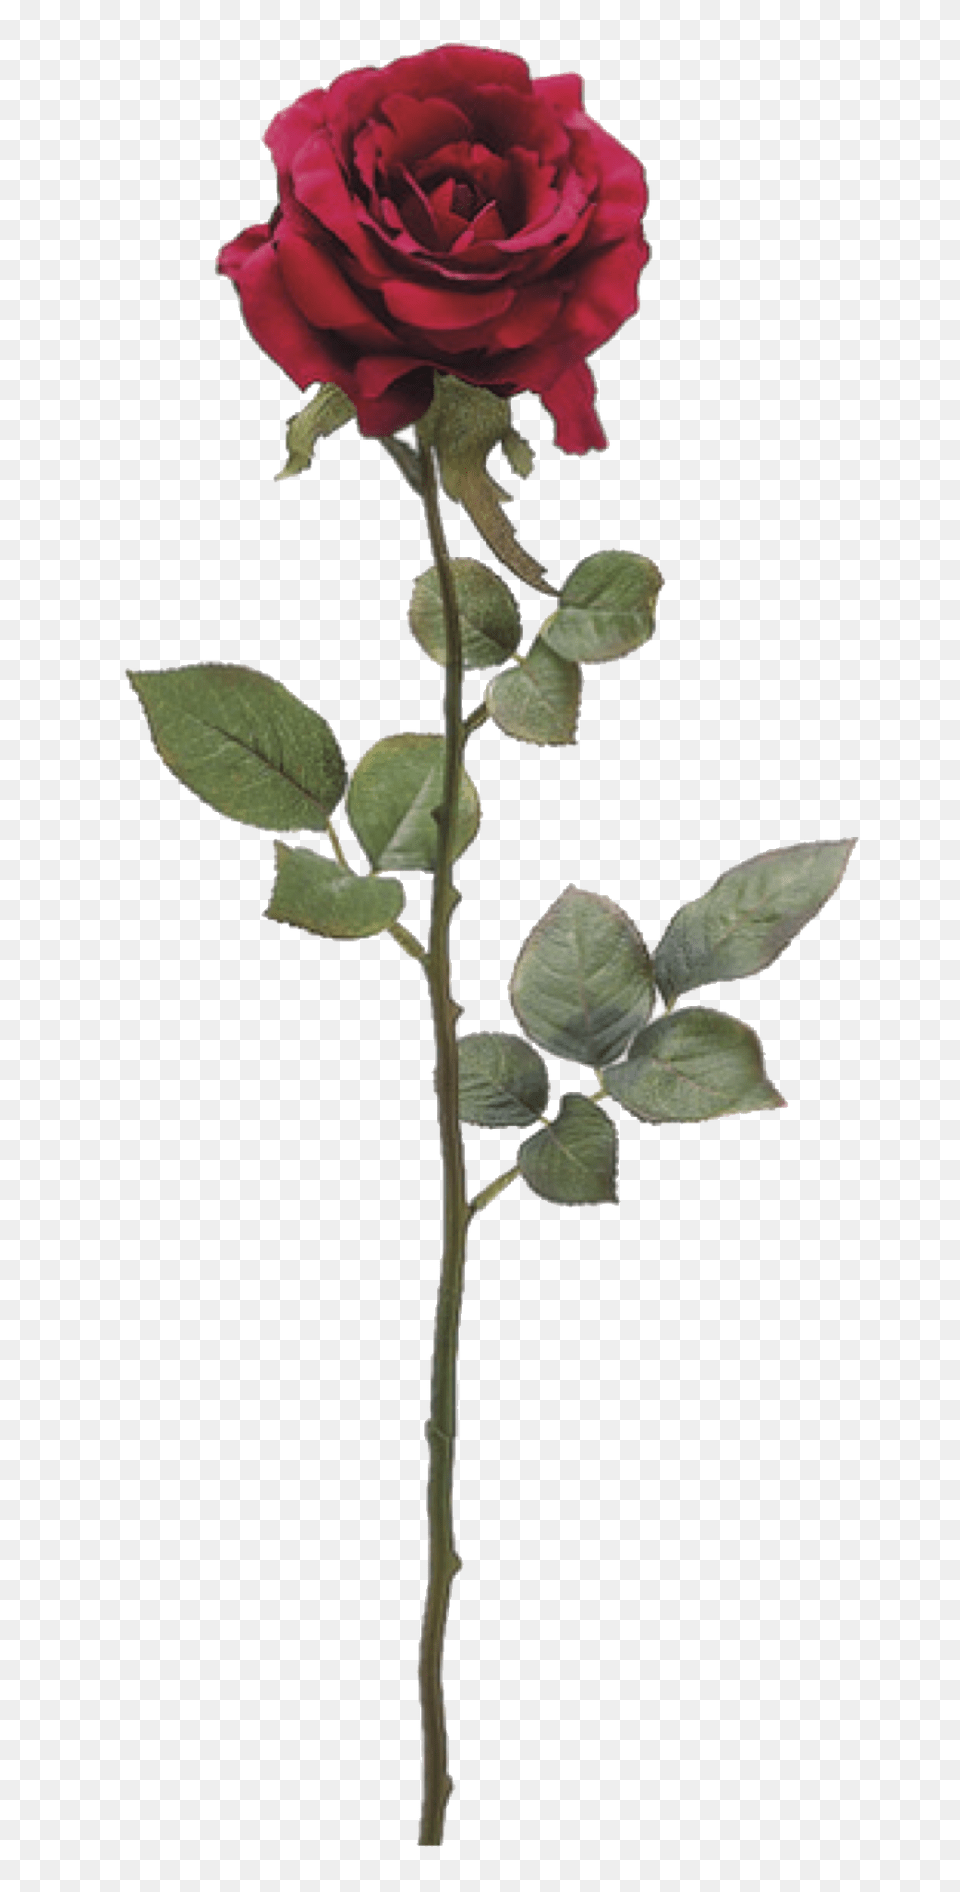 Flower, Plant, Rose Png Image